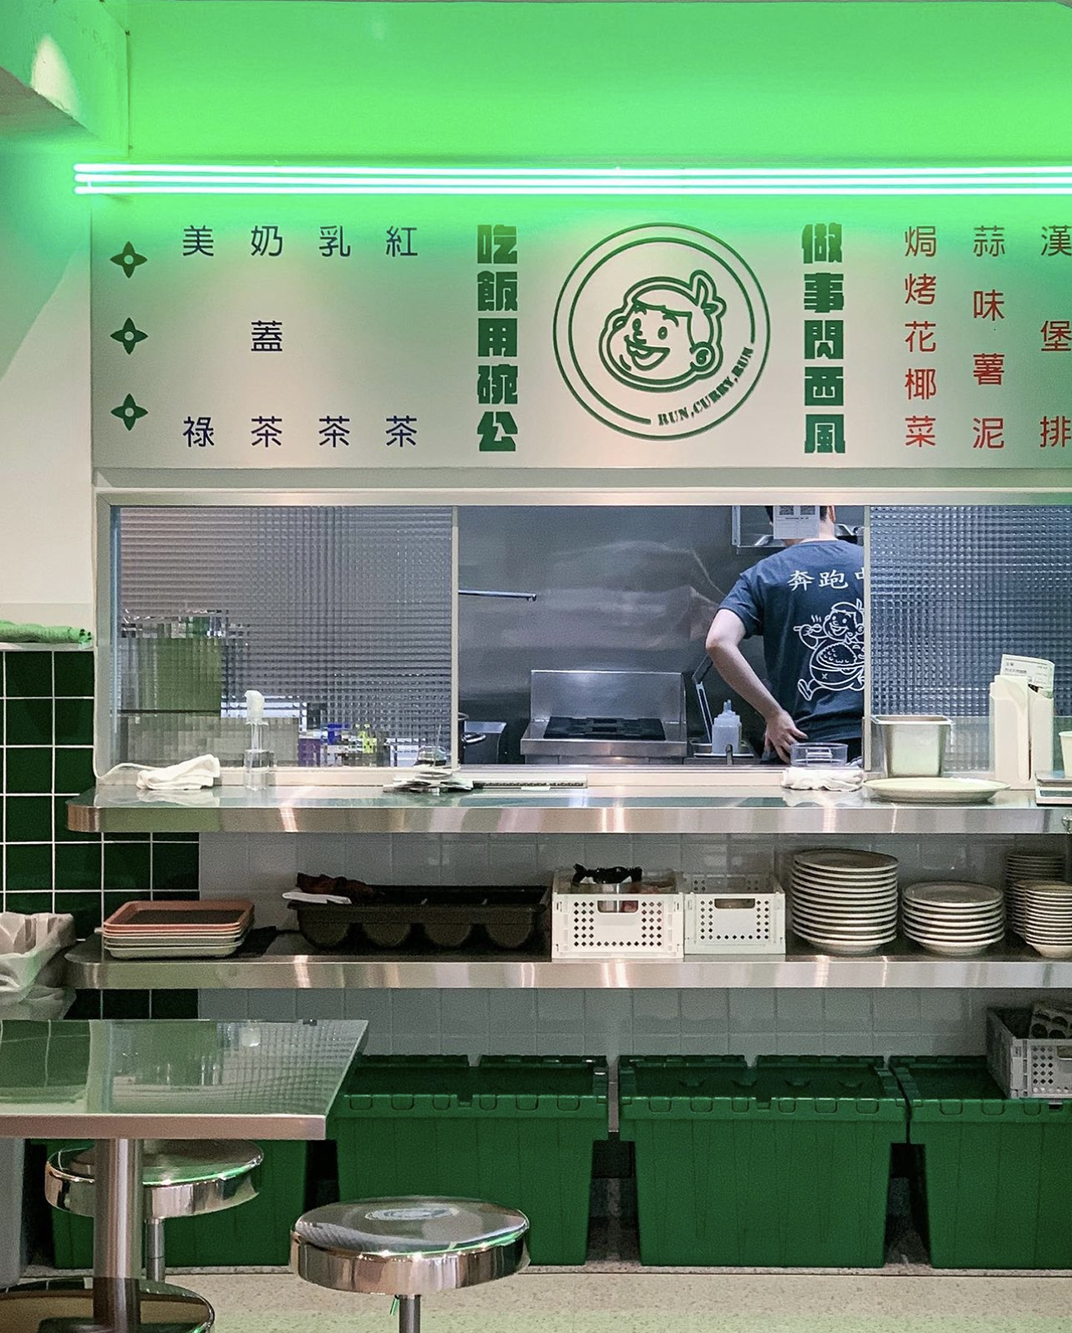 台式餐厅嘎哩奔Run Curry Run 台湾 北京 上海 成都 武汉 杭州 广州 澳门 logo设计 vi设计 空间设计